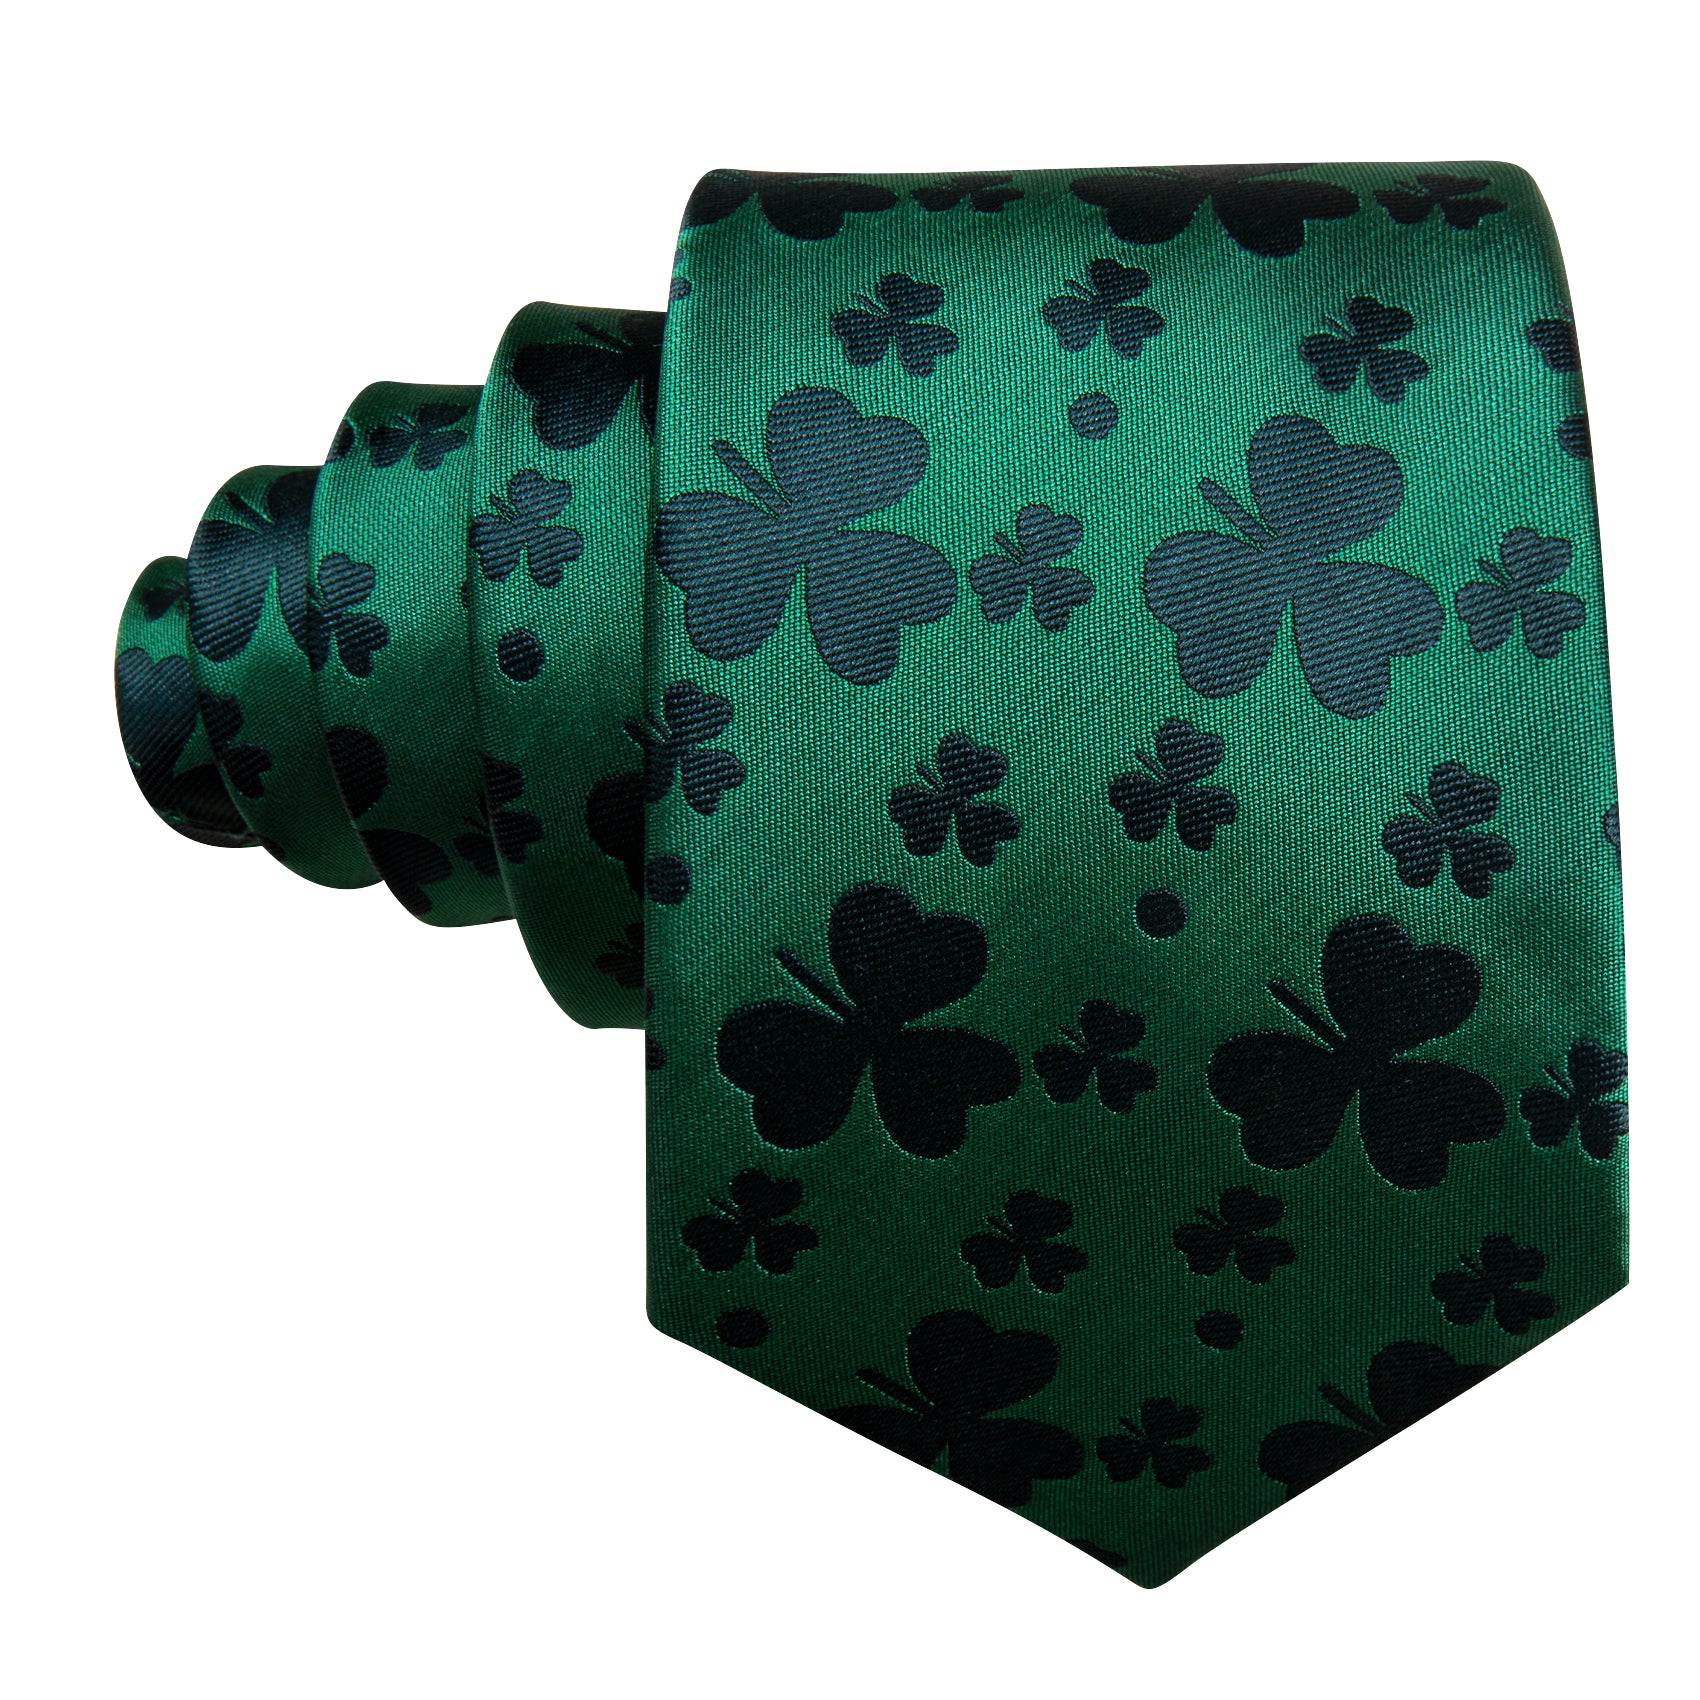 Barry Wang Green Clover Silk Tie Handkerchief Cufflinks Set